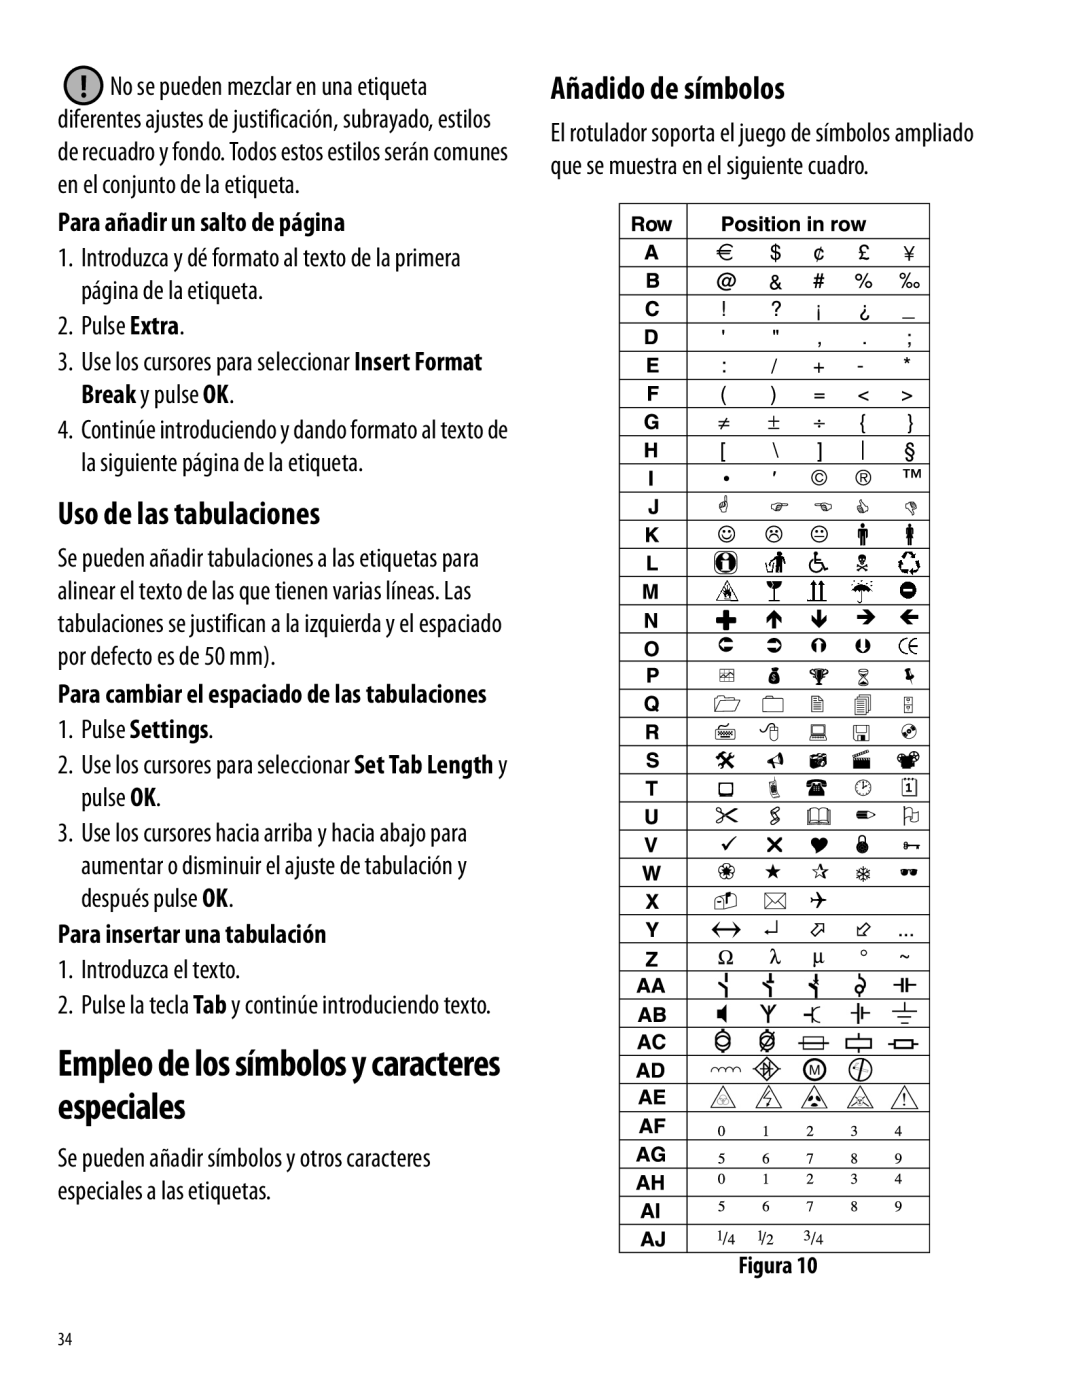 Dymo 350 manual Empleo de los símbolos y caracteres especiales, Añadido de símbolos, Uso de las tabulaciones 